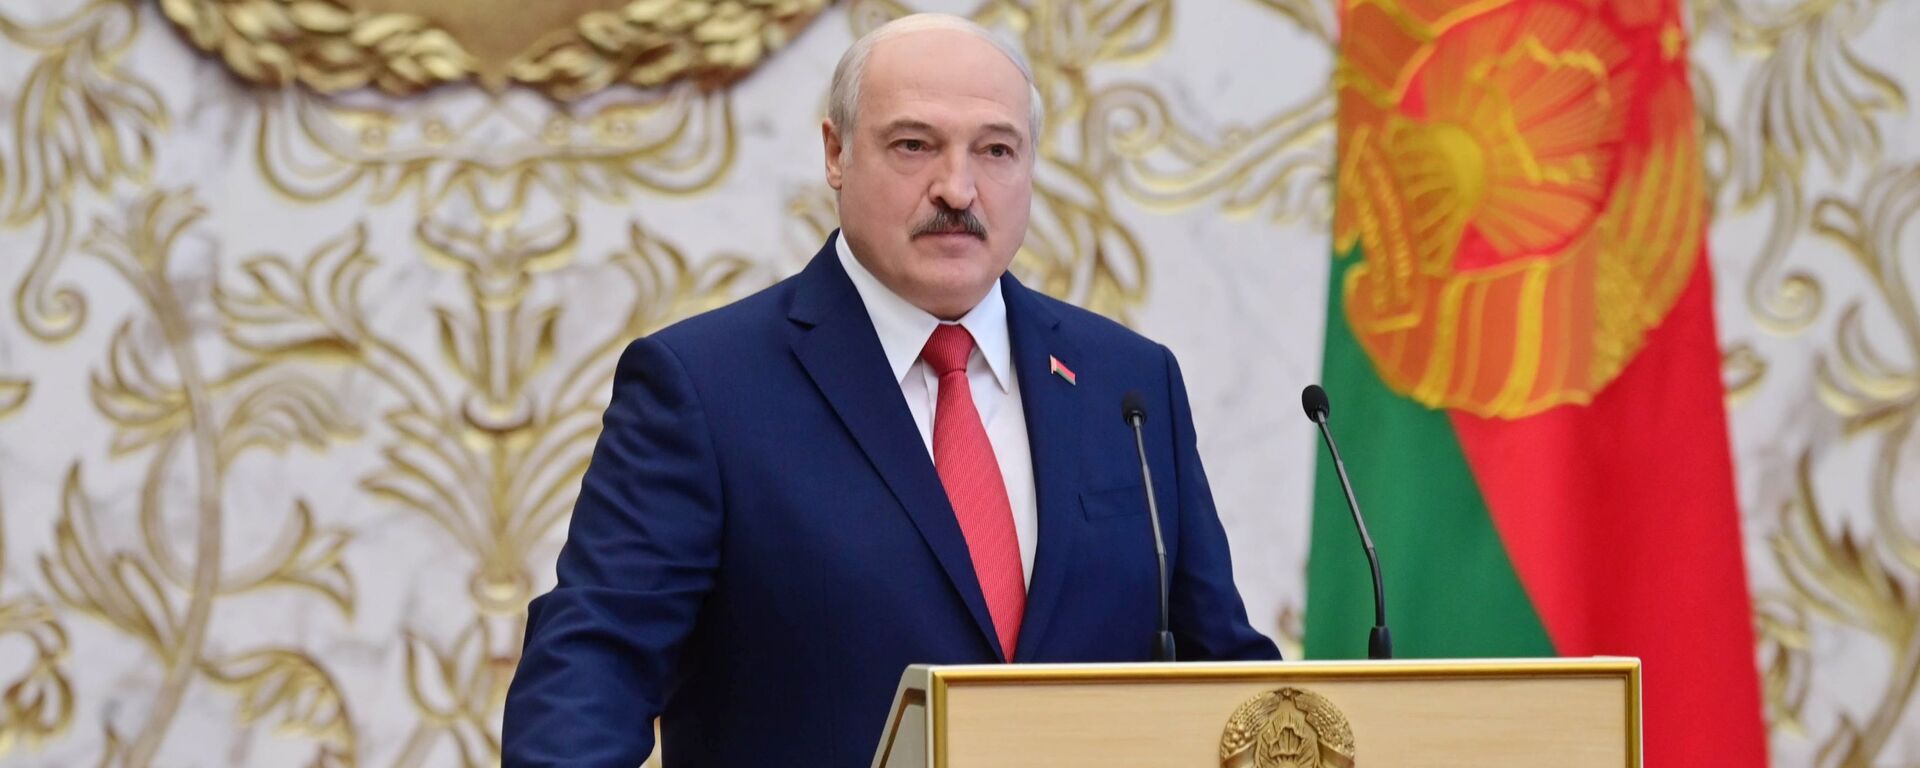 Tổng thống Belarus Alexander Lukashenko tại lễ nhậm chức ở Minsk - Sputnik Việt Nam, 1920, 19.03.2022